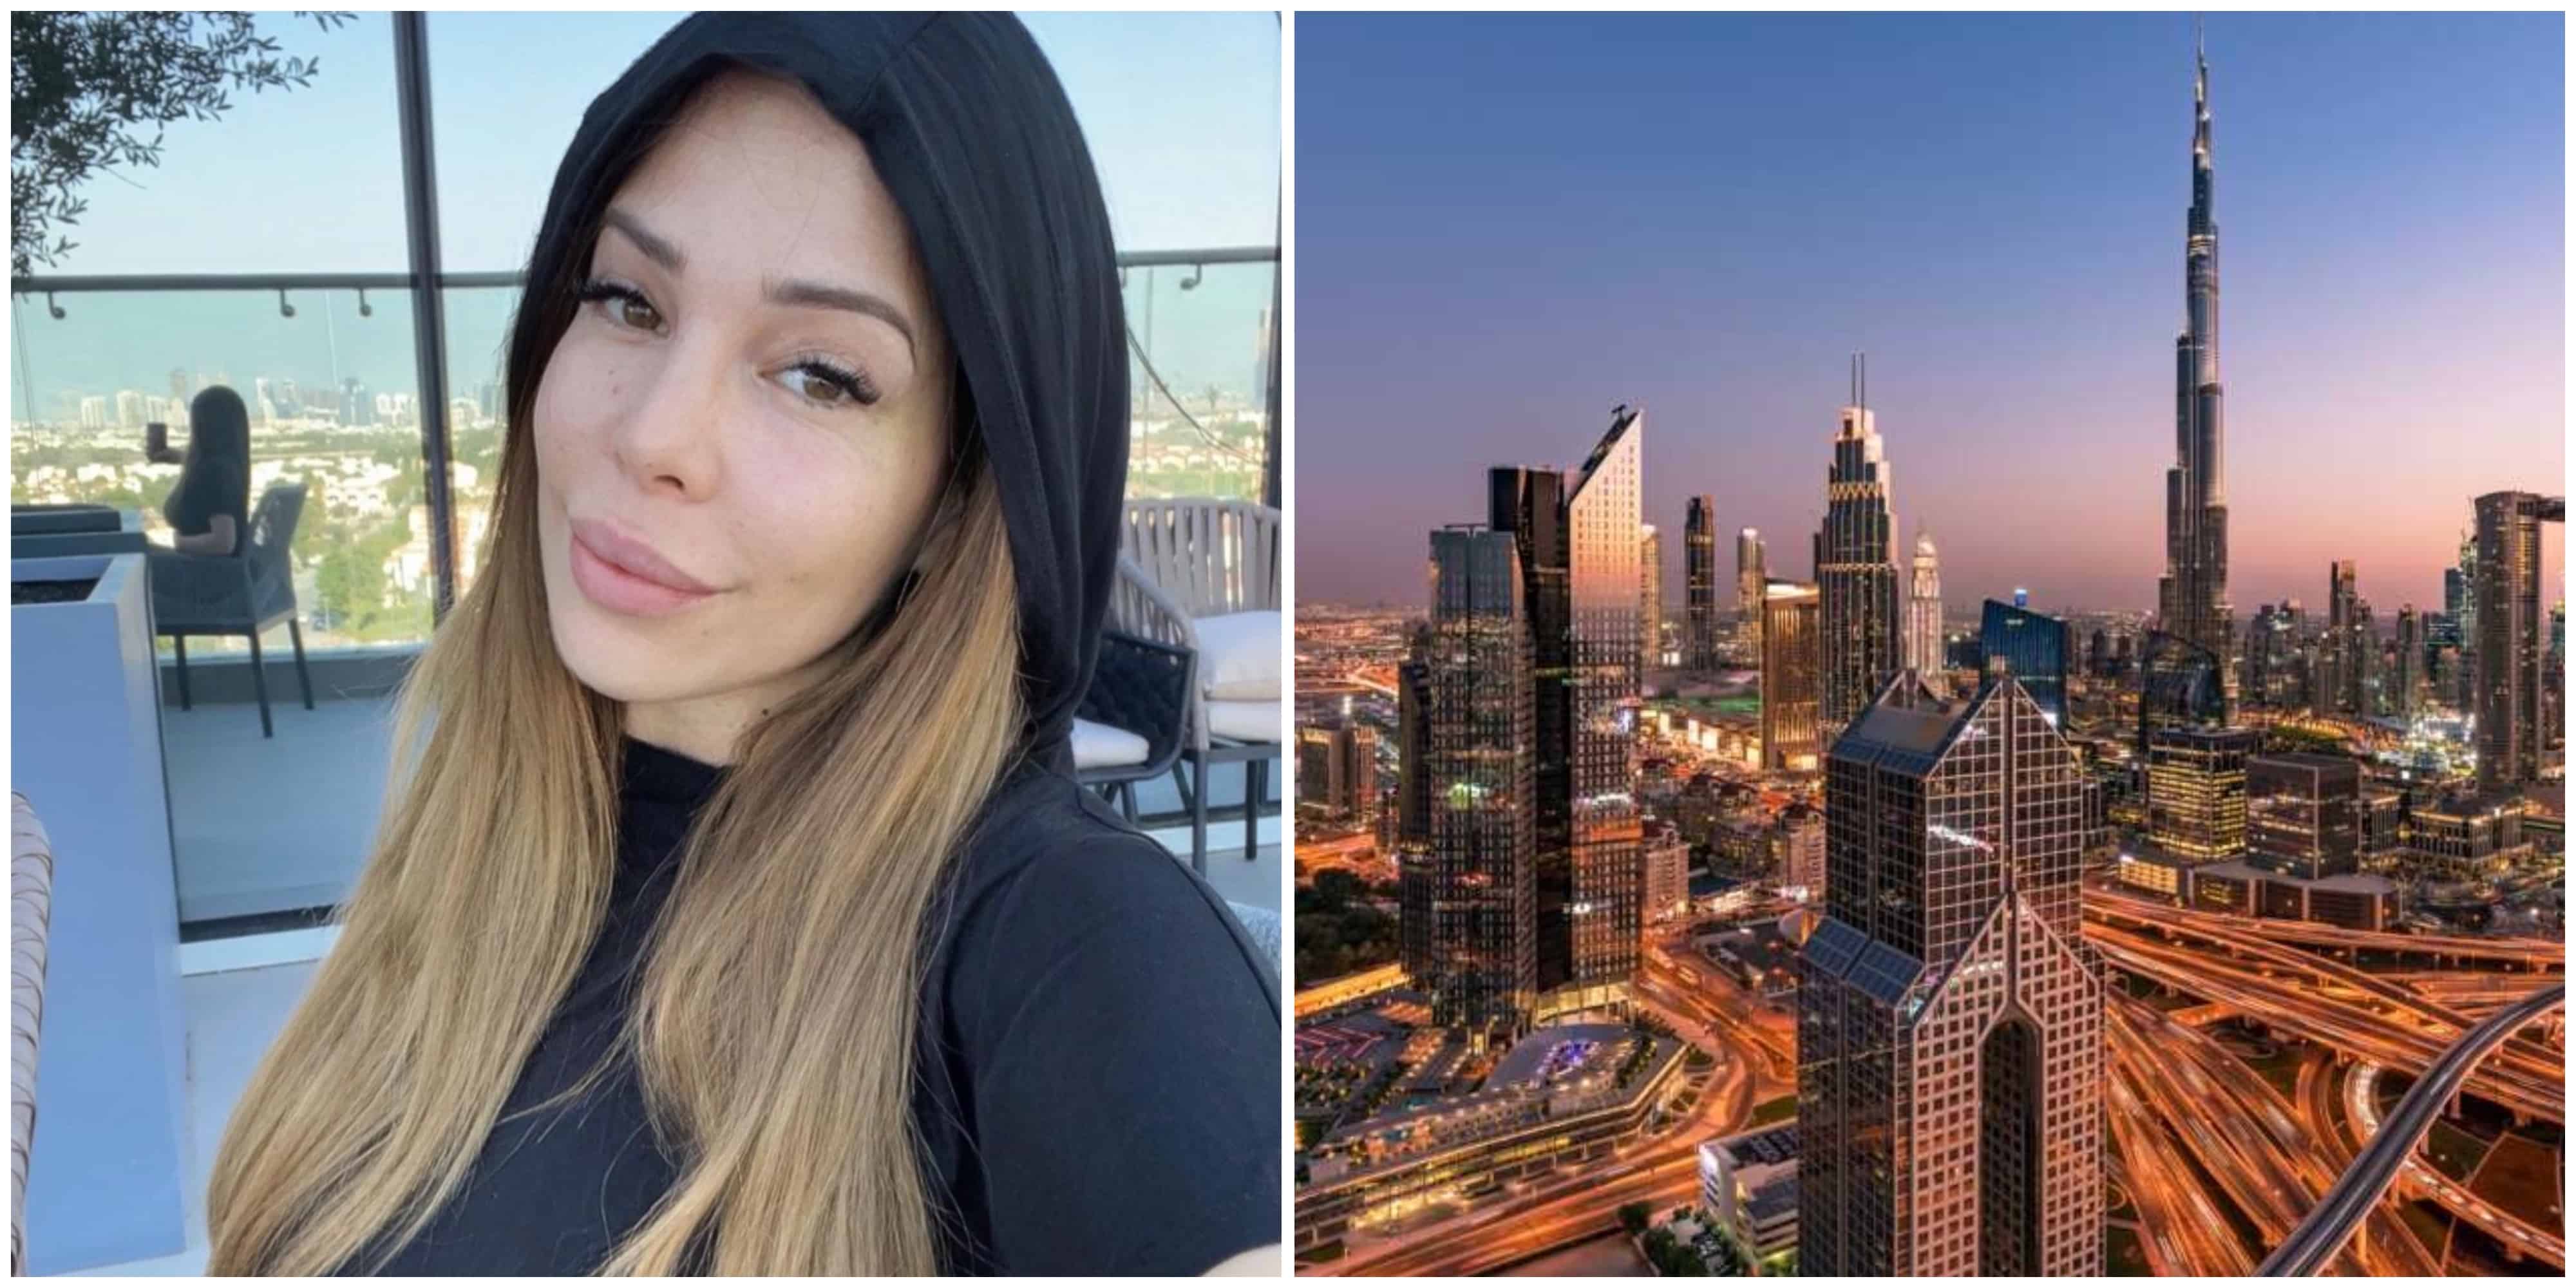 Kim Glow : elle quitte la France pour vivre à Dubaï suite à une agression, elle raconte